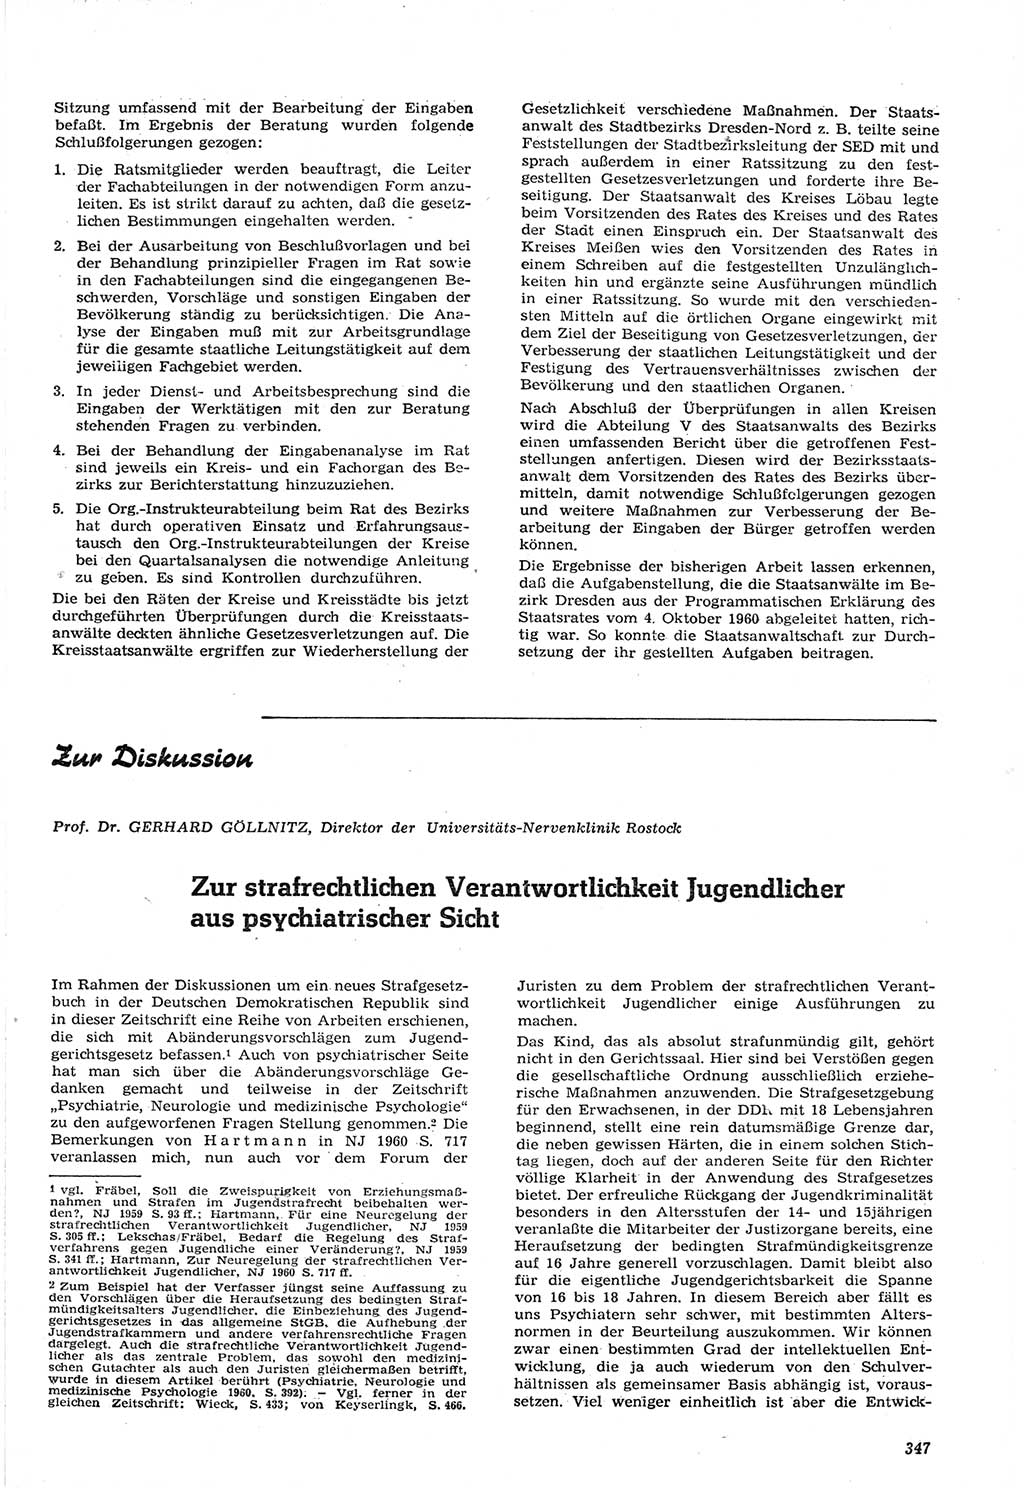 Neue Justiz (NJ), Zeitschrift für Recht und Rechtswissenschaft [Deutsche Demokratische Republik (DDR)], 15. Jahrgang 1961, Seite 347 (NJ DDR 1961, S. 347)